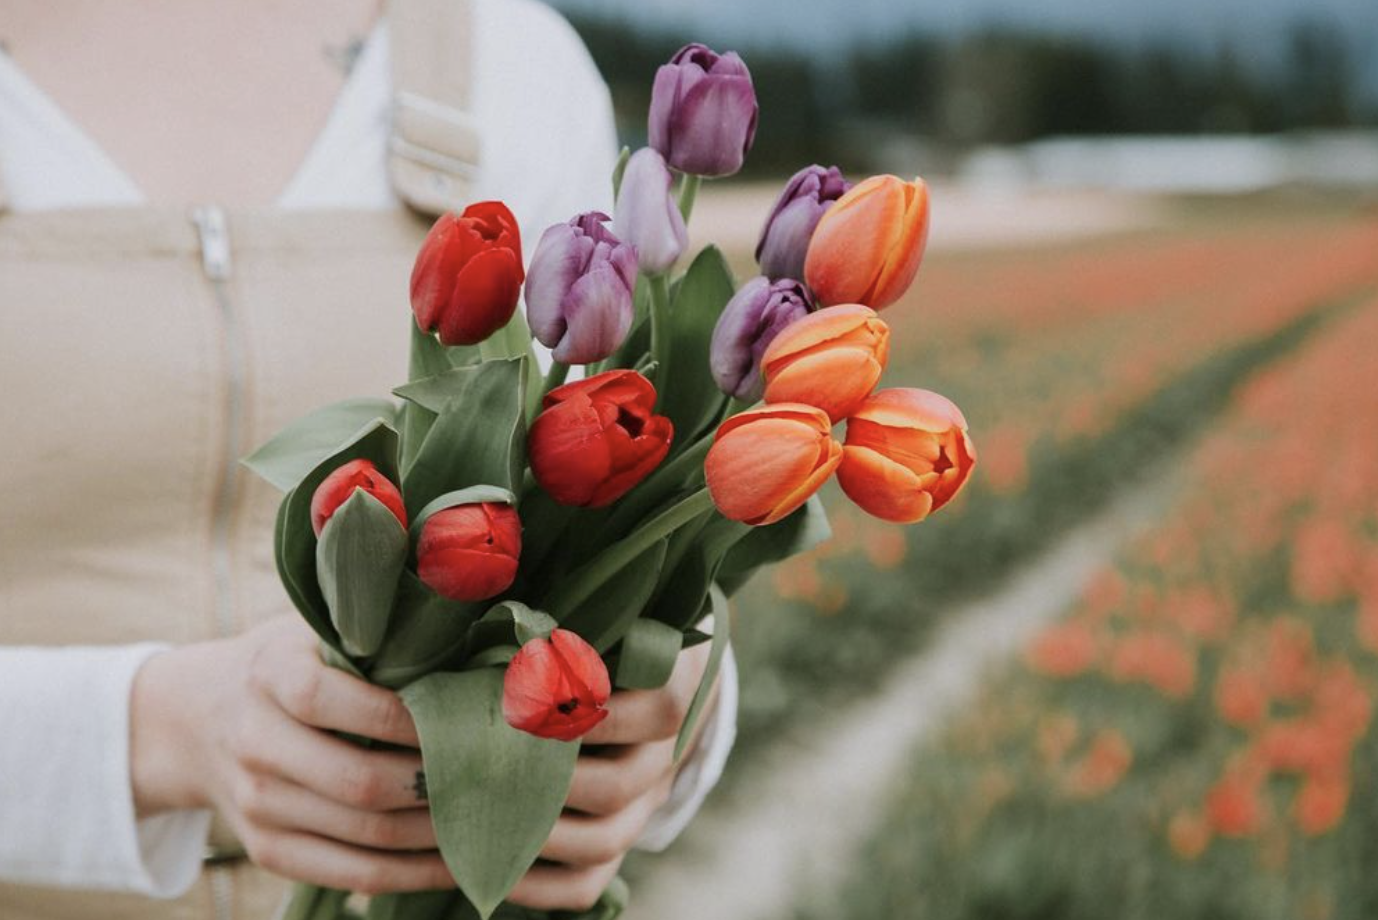 La tua Guida Essenziale alla Piantagione dei Tulipani - Impara a coltivare i Tulipani